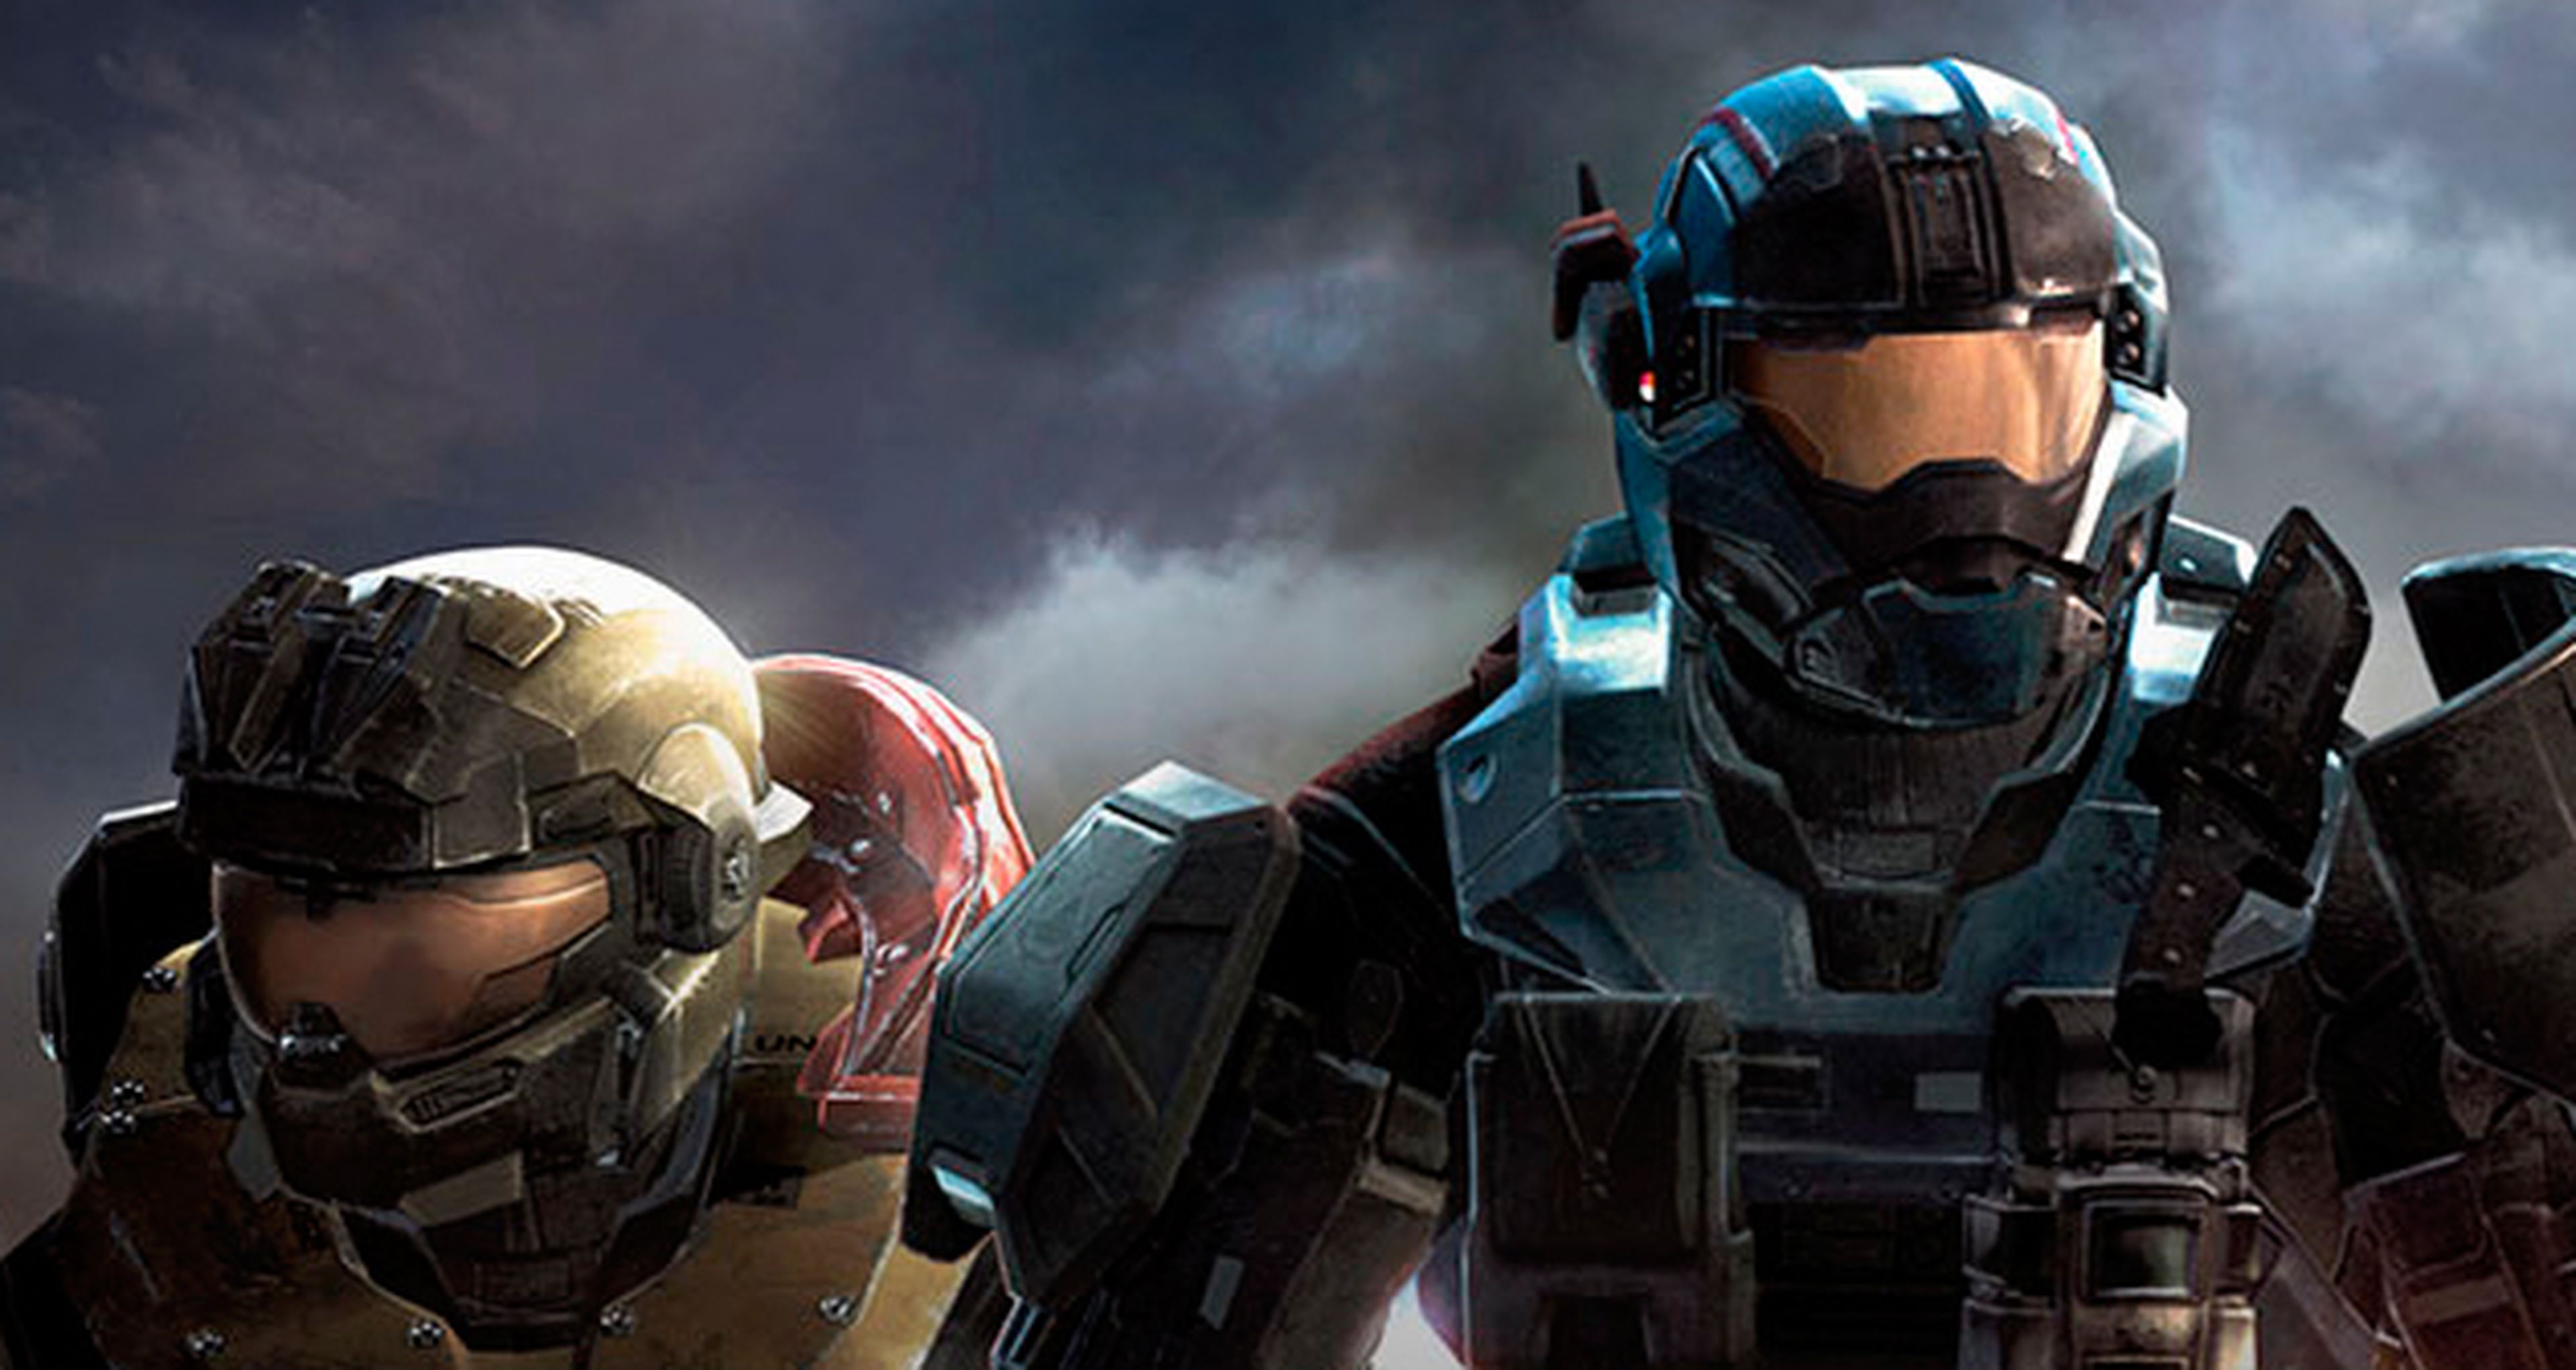 Xbox One, anunciados los nuevos juegos retrocompatibles de Xbox 360